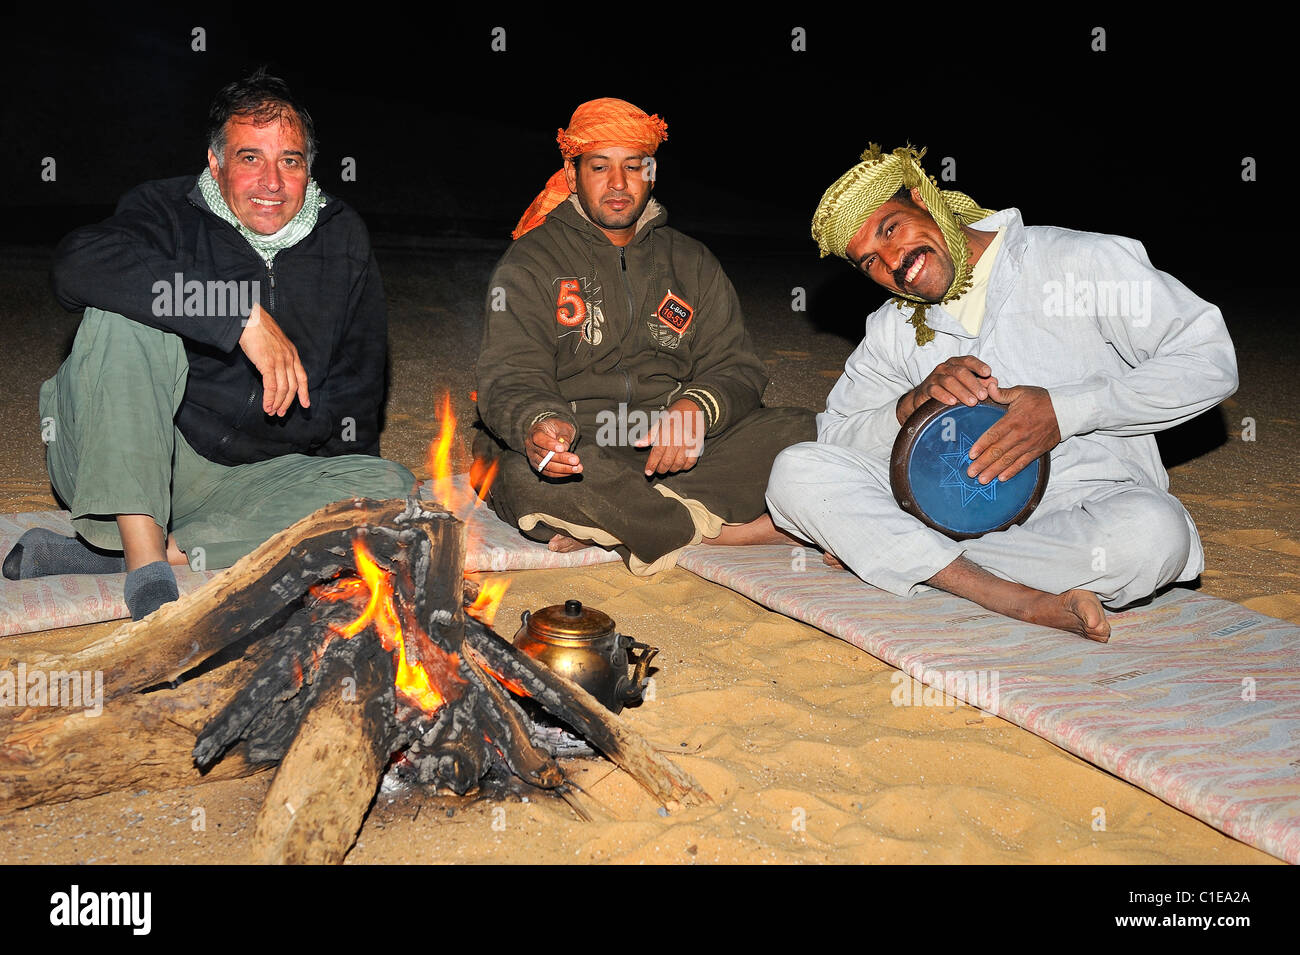 Le persone attorno a un fuoco ascoltando un musicista egiziano giocando tam timbro durante un soggiorno di una notte nel deserto bianco, Egitto Foto Stock